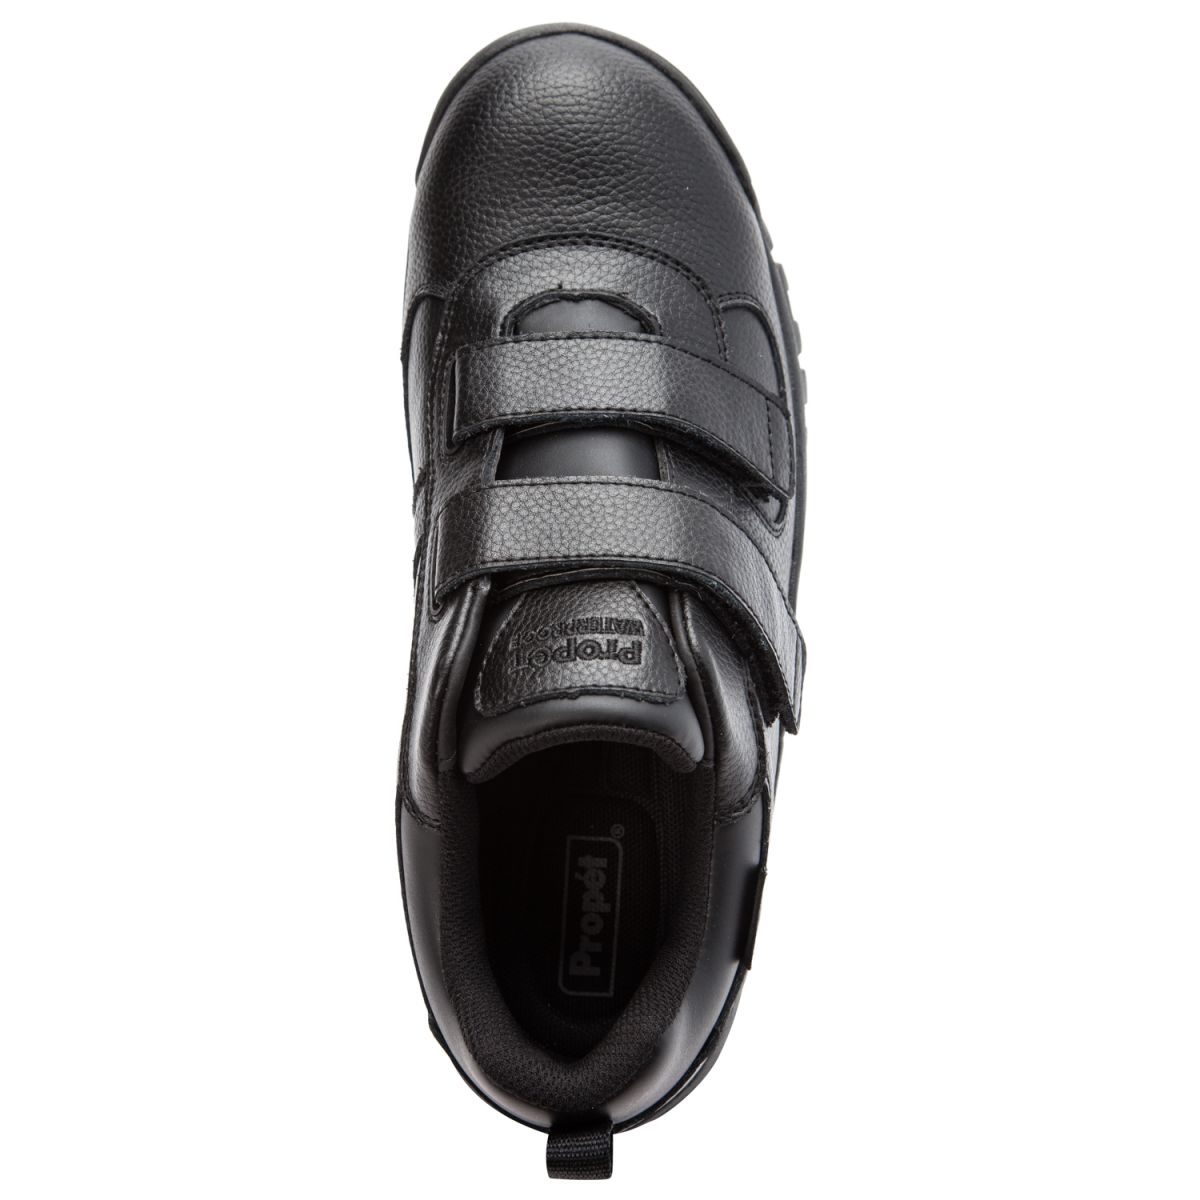 Propet Men's Cliff Walker Low Strap Waterproof Walking Shoe Black Leather - MBA023LBLK - image 3 of 6